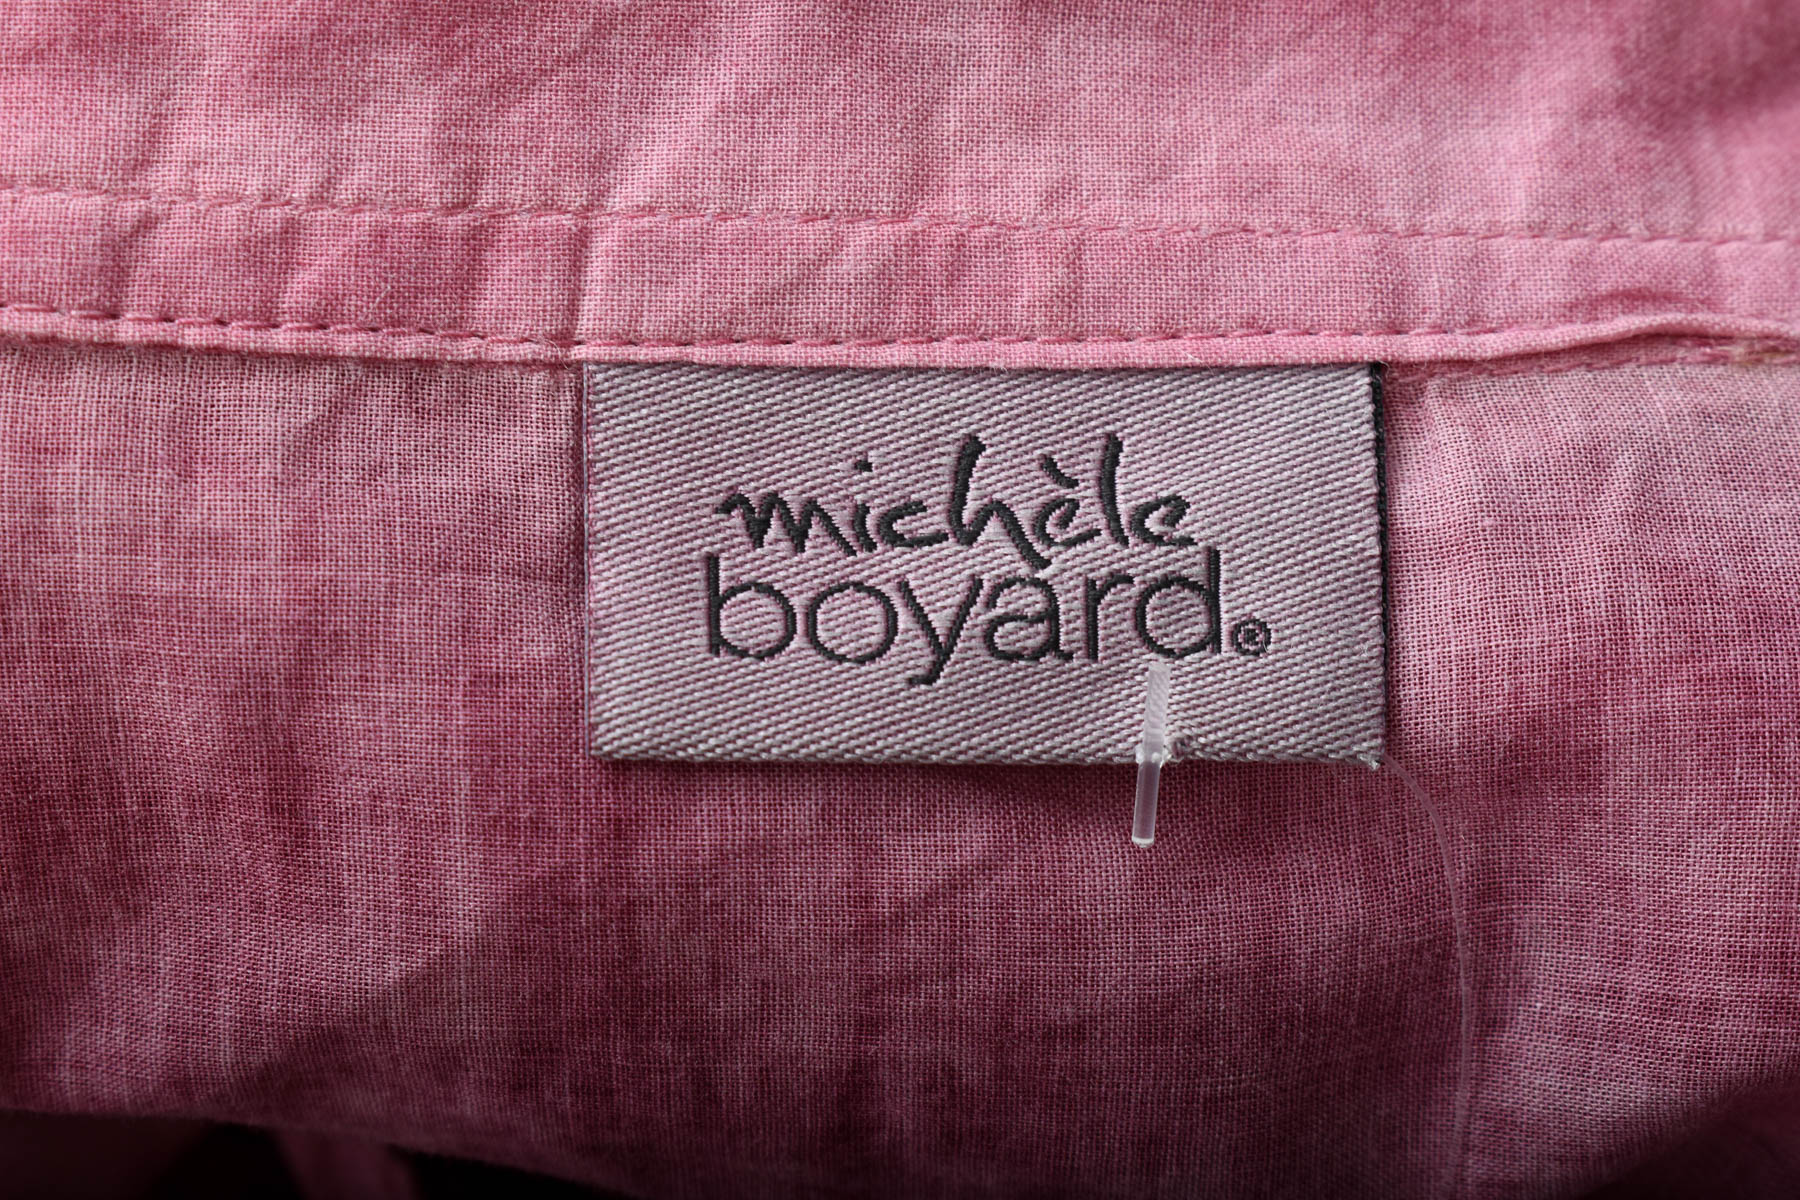 Дамска риза - Michele Boyard - 2